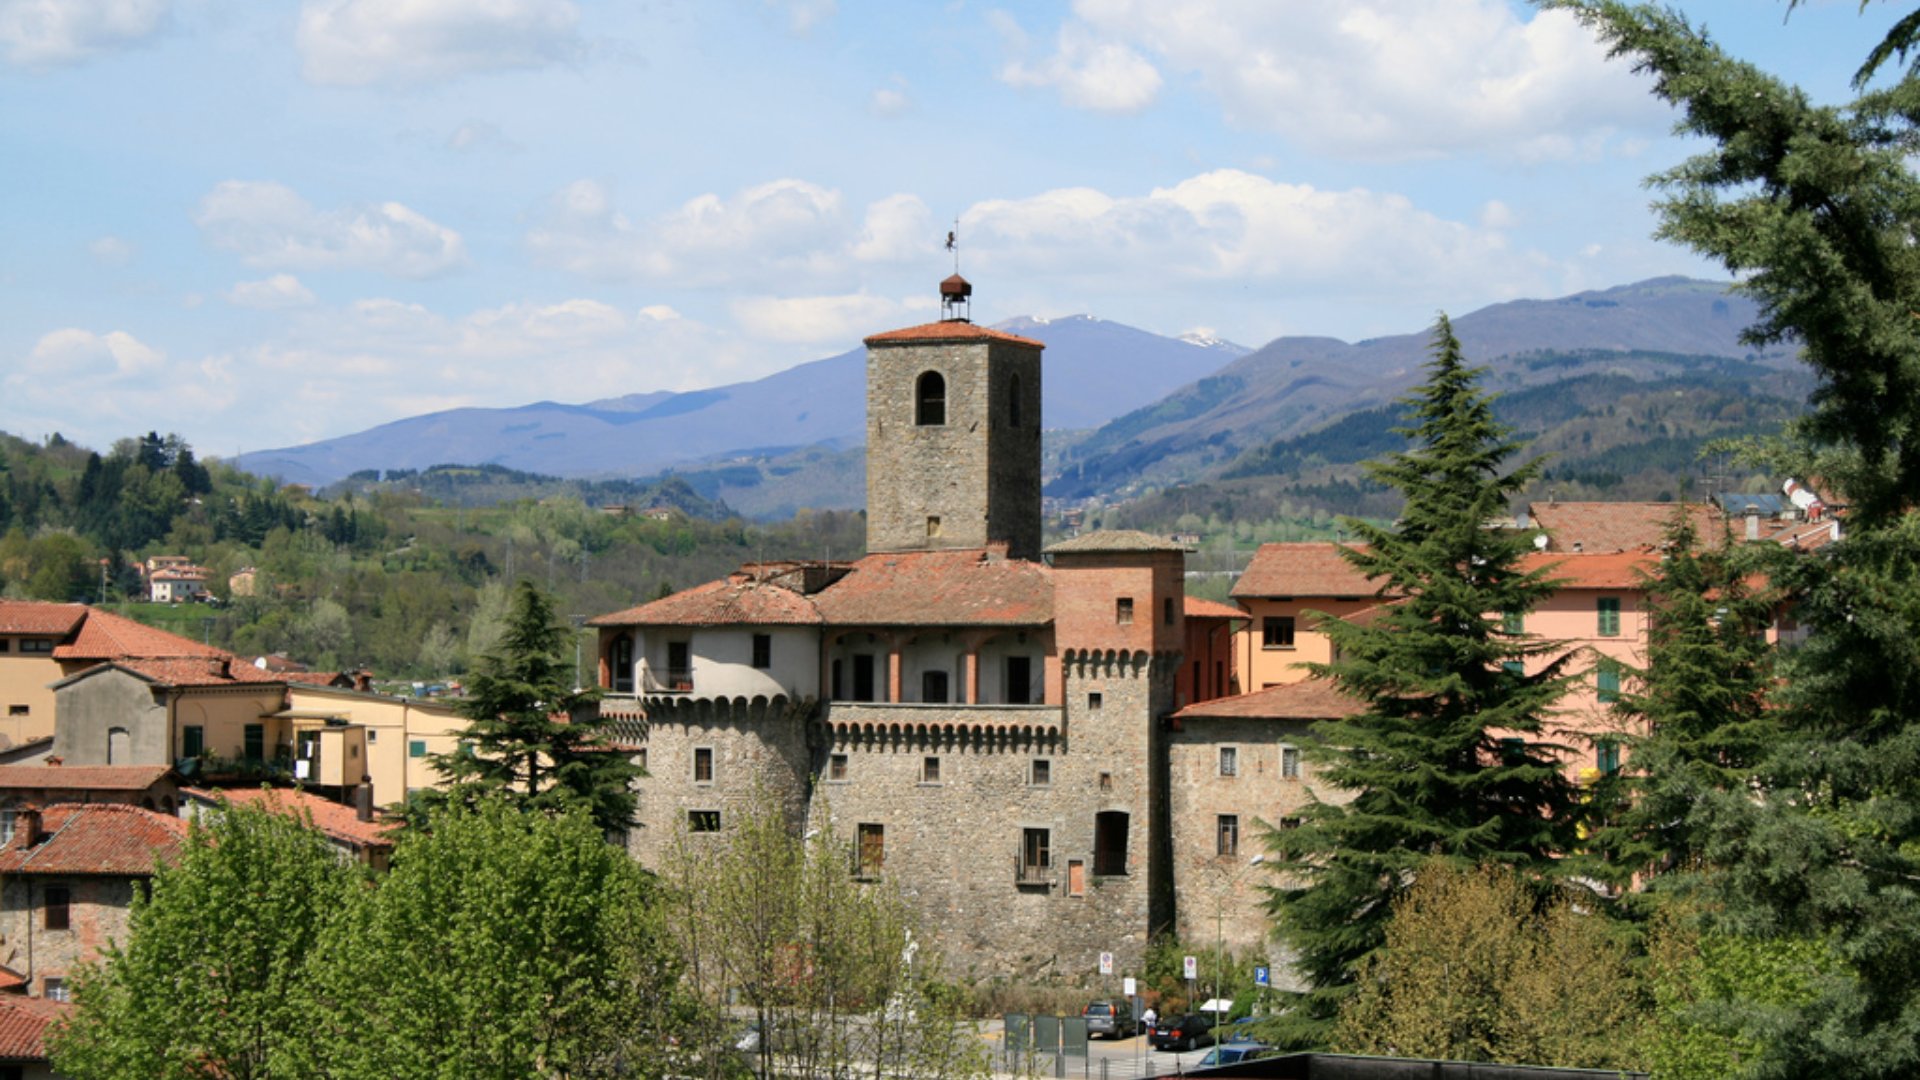 The Fortress of Castelnuovo di Garfagnana